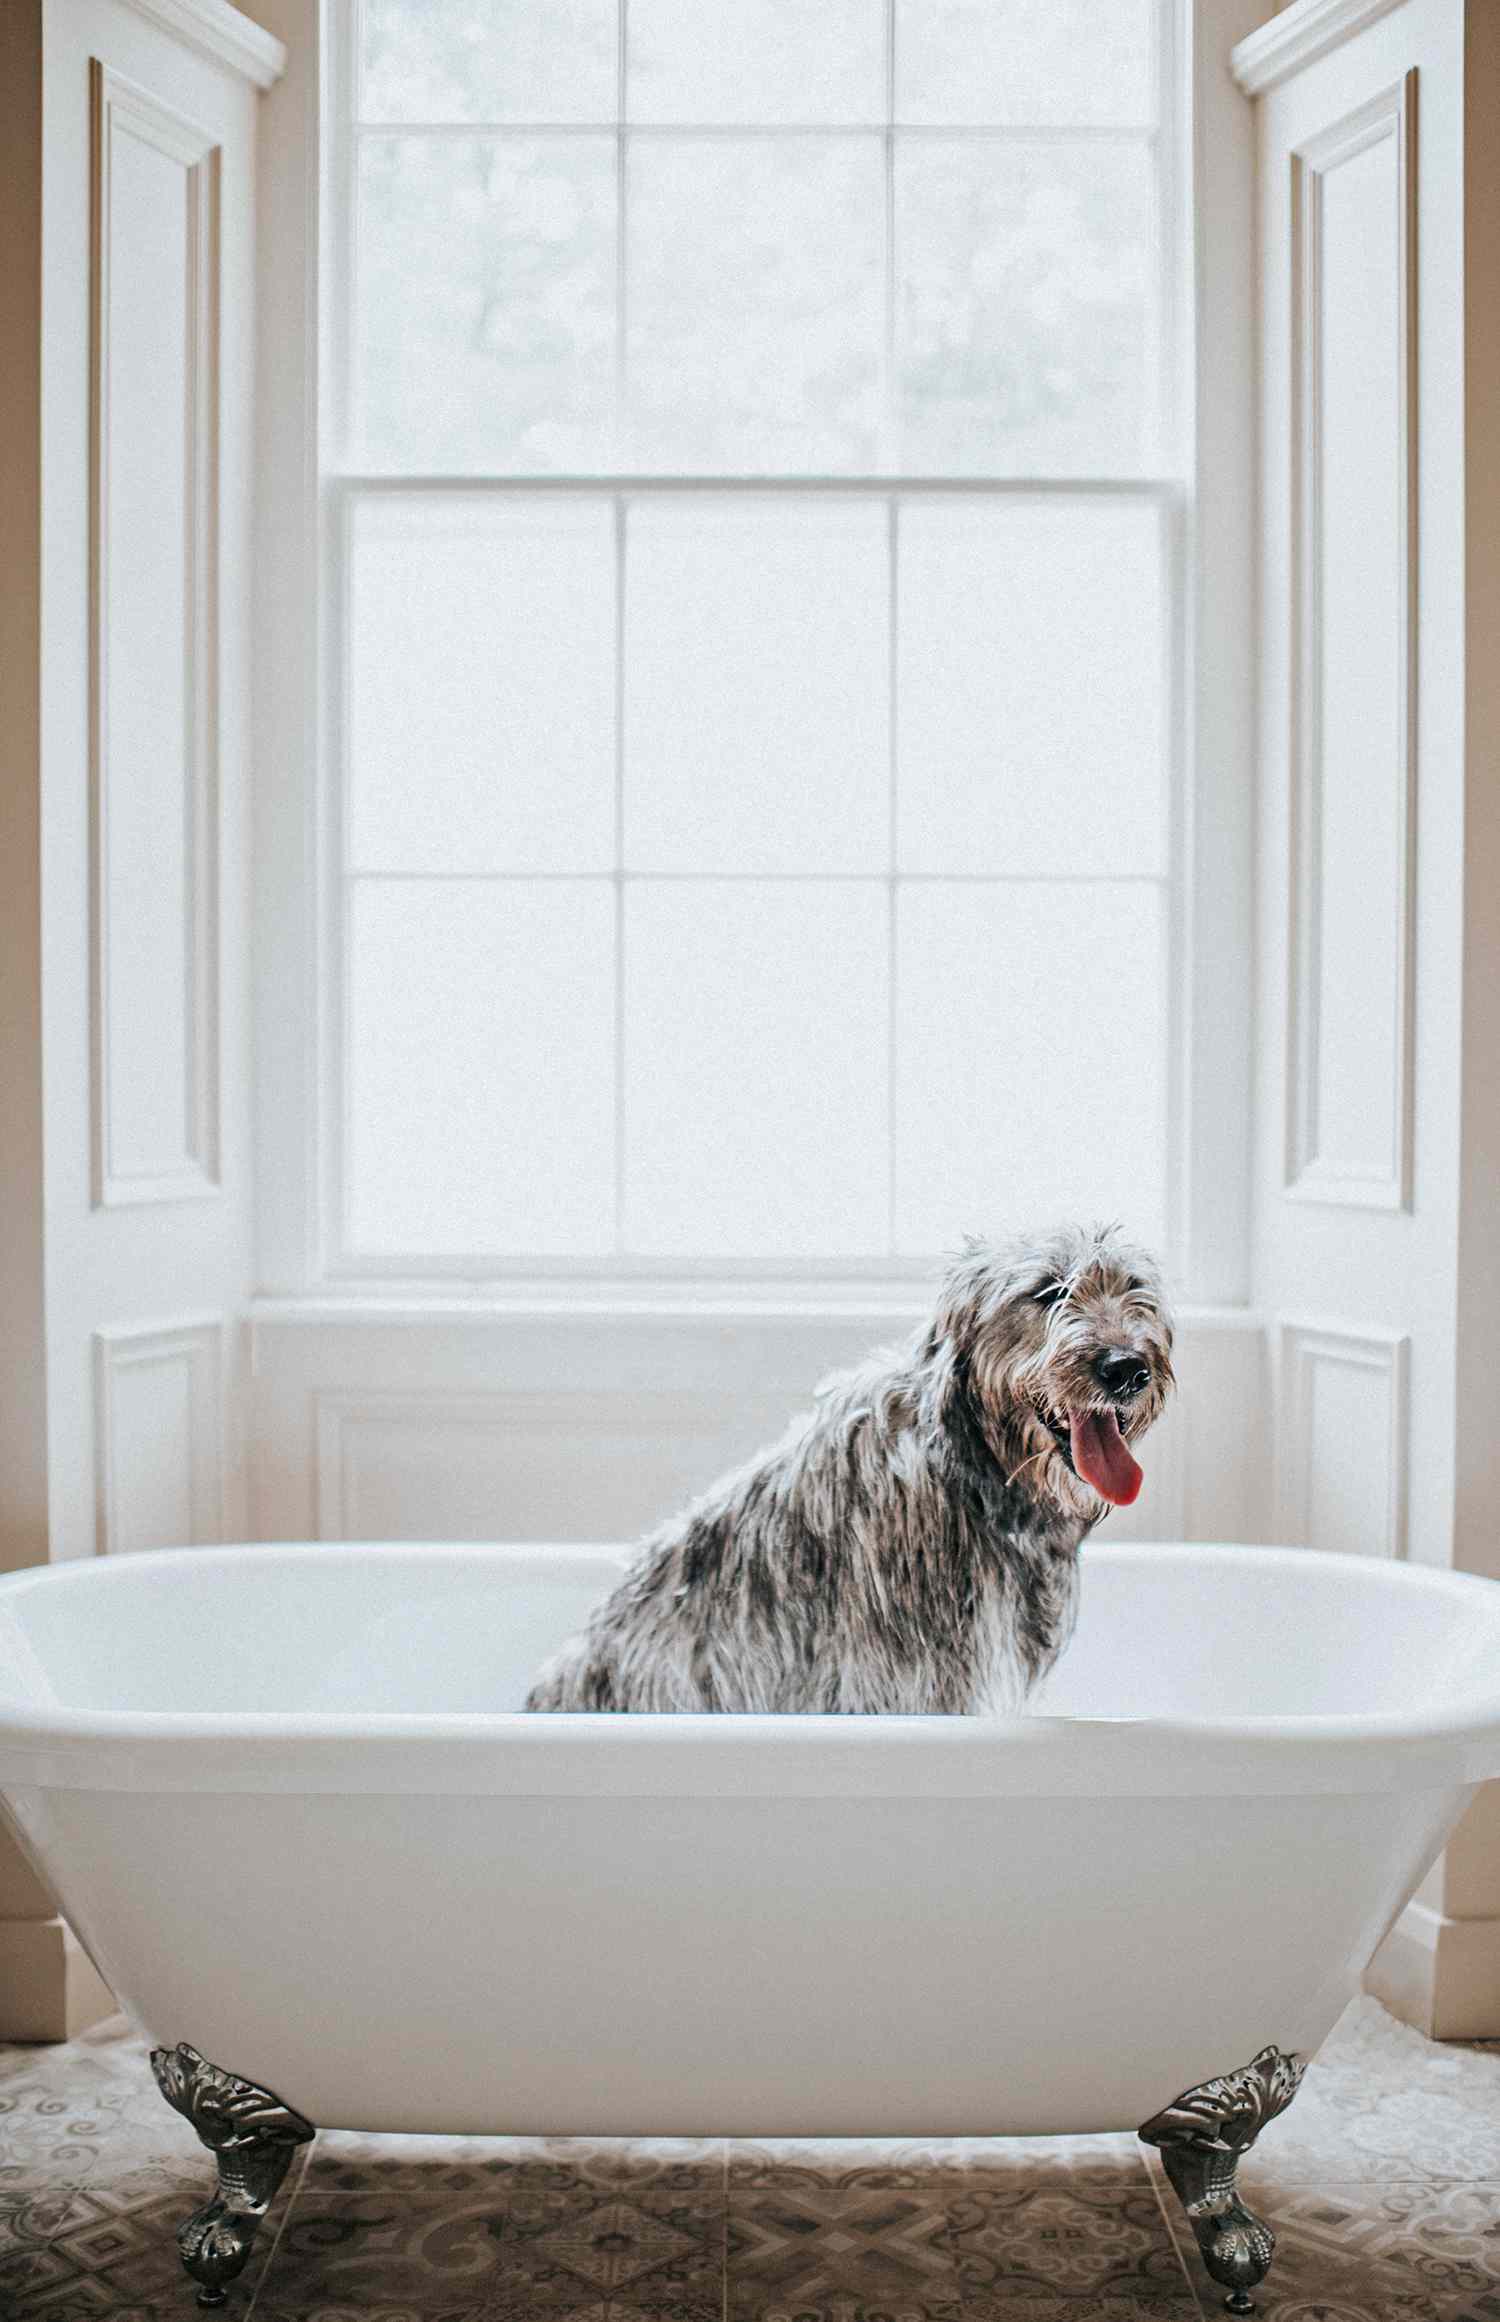 irish wolfhound dog in bath tub